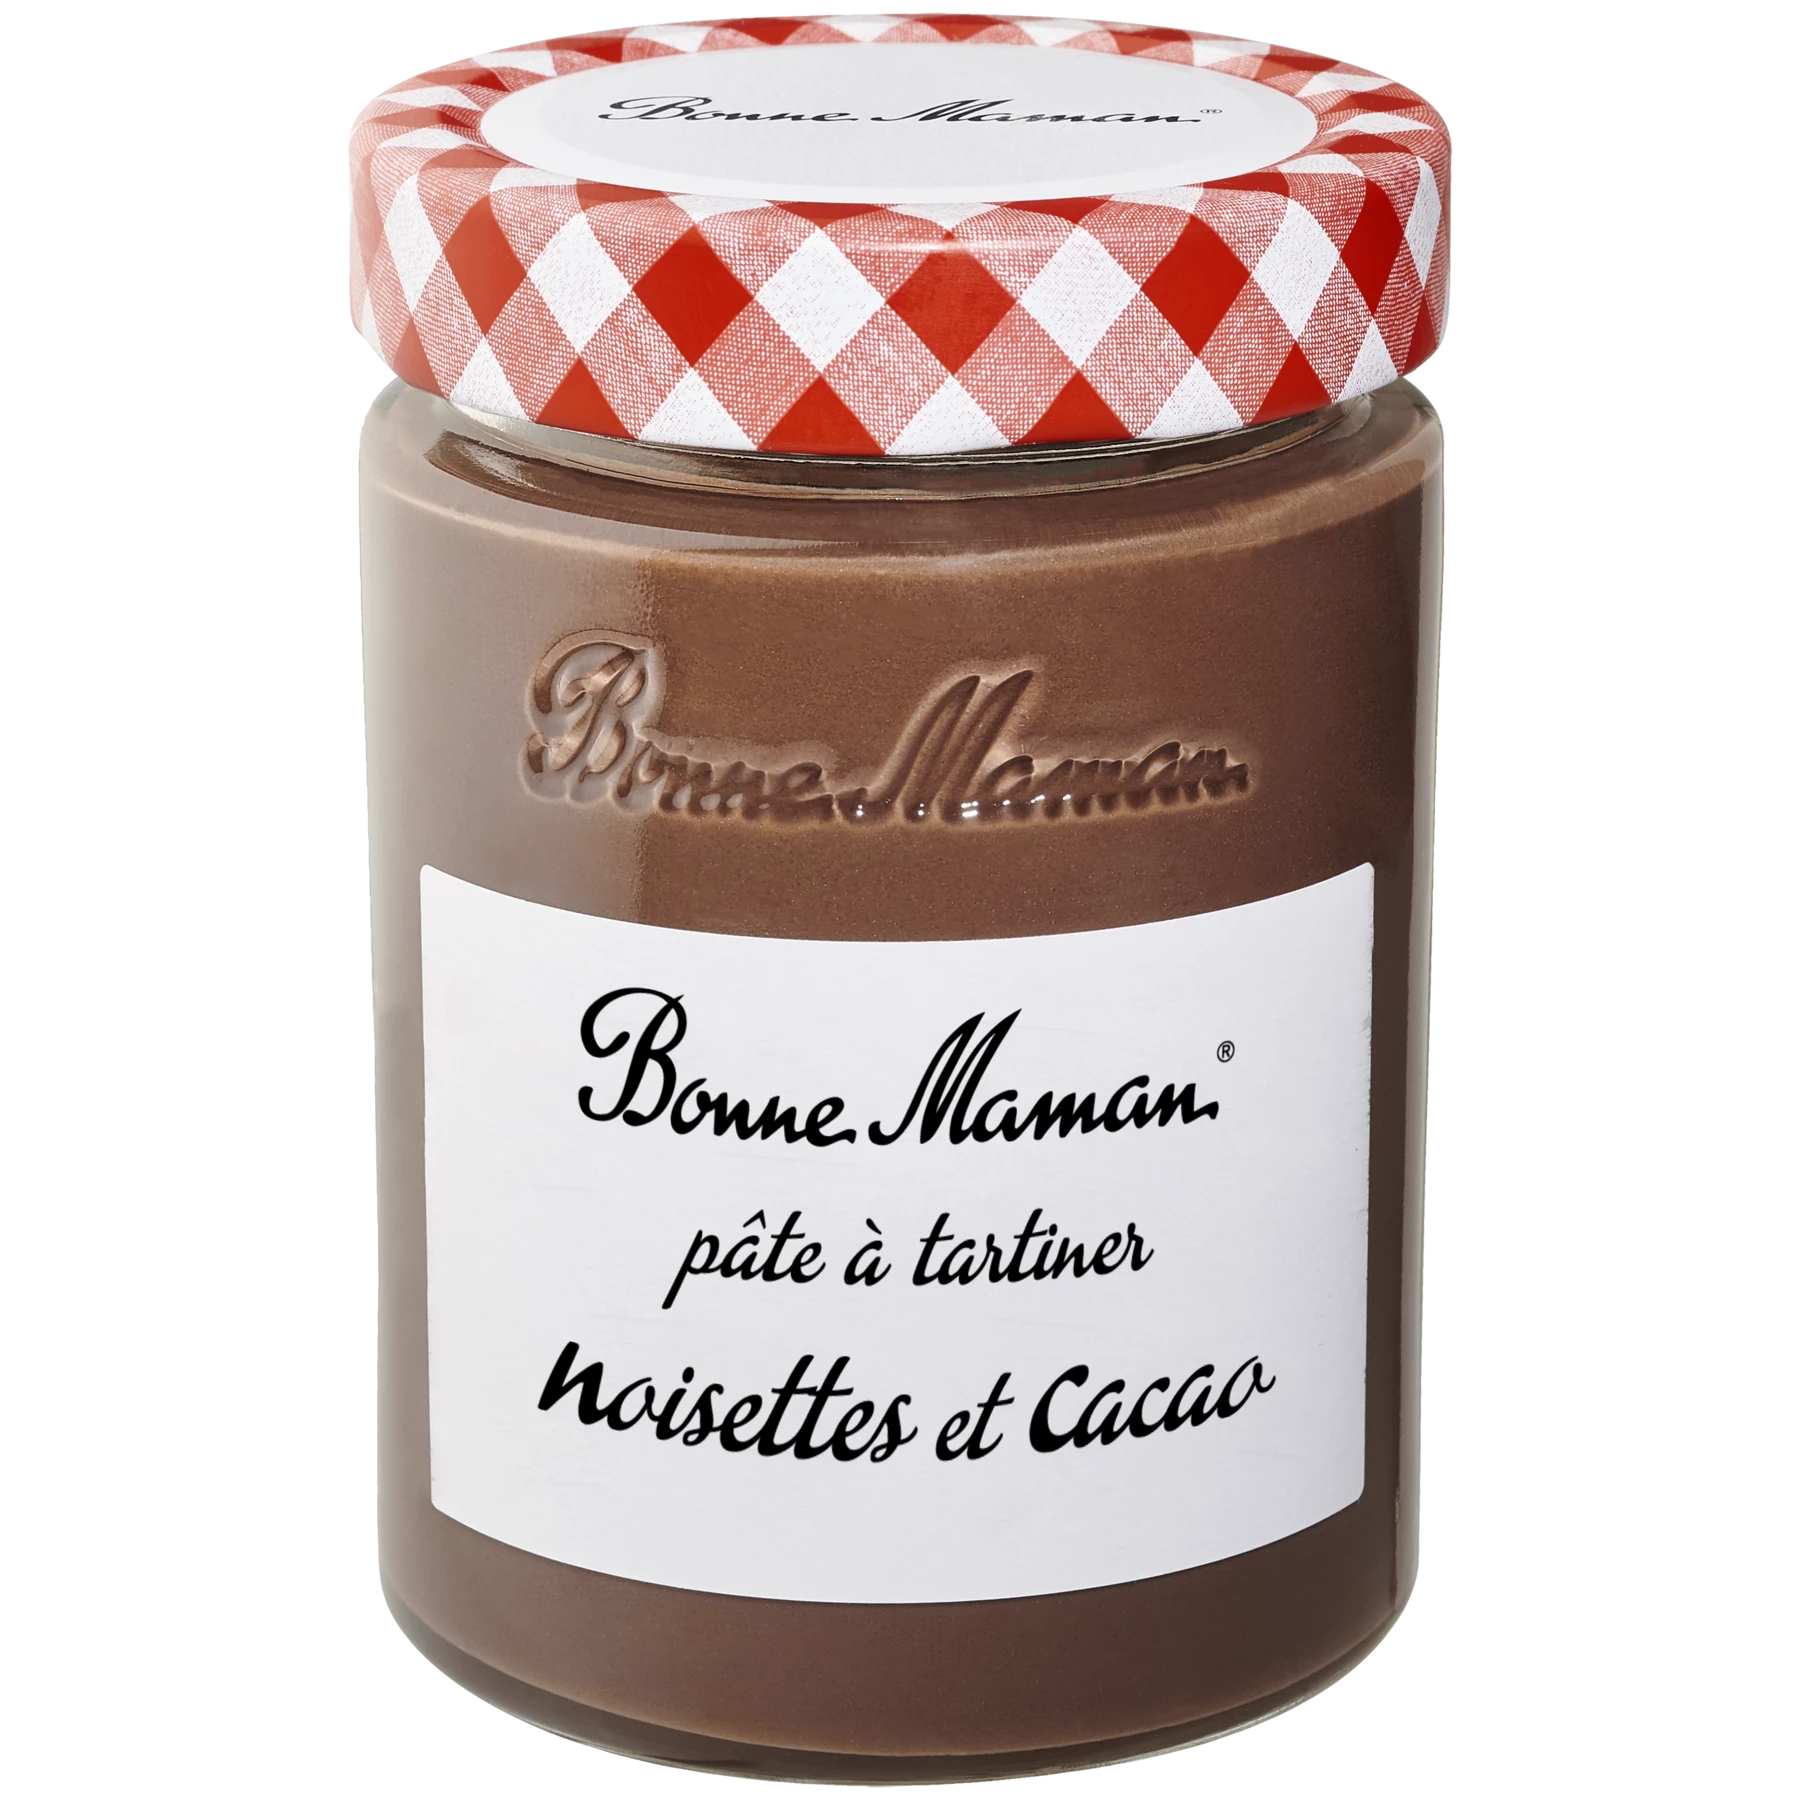 Crema de avellanas y cacao 360g - BONNE MAMAN